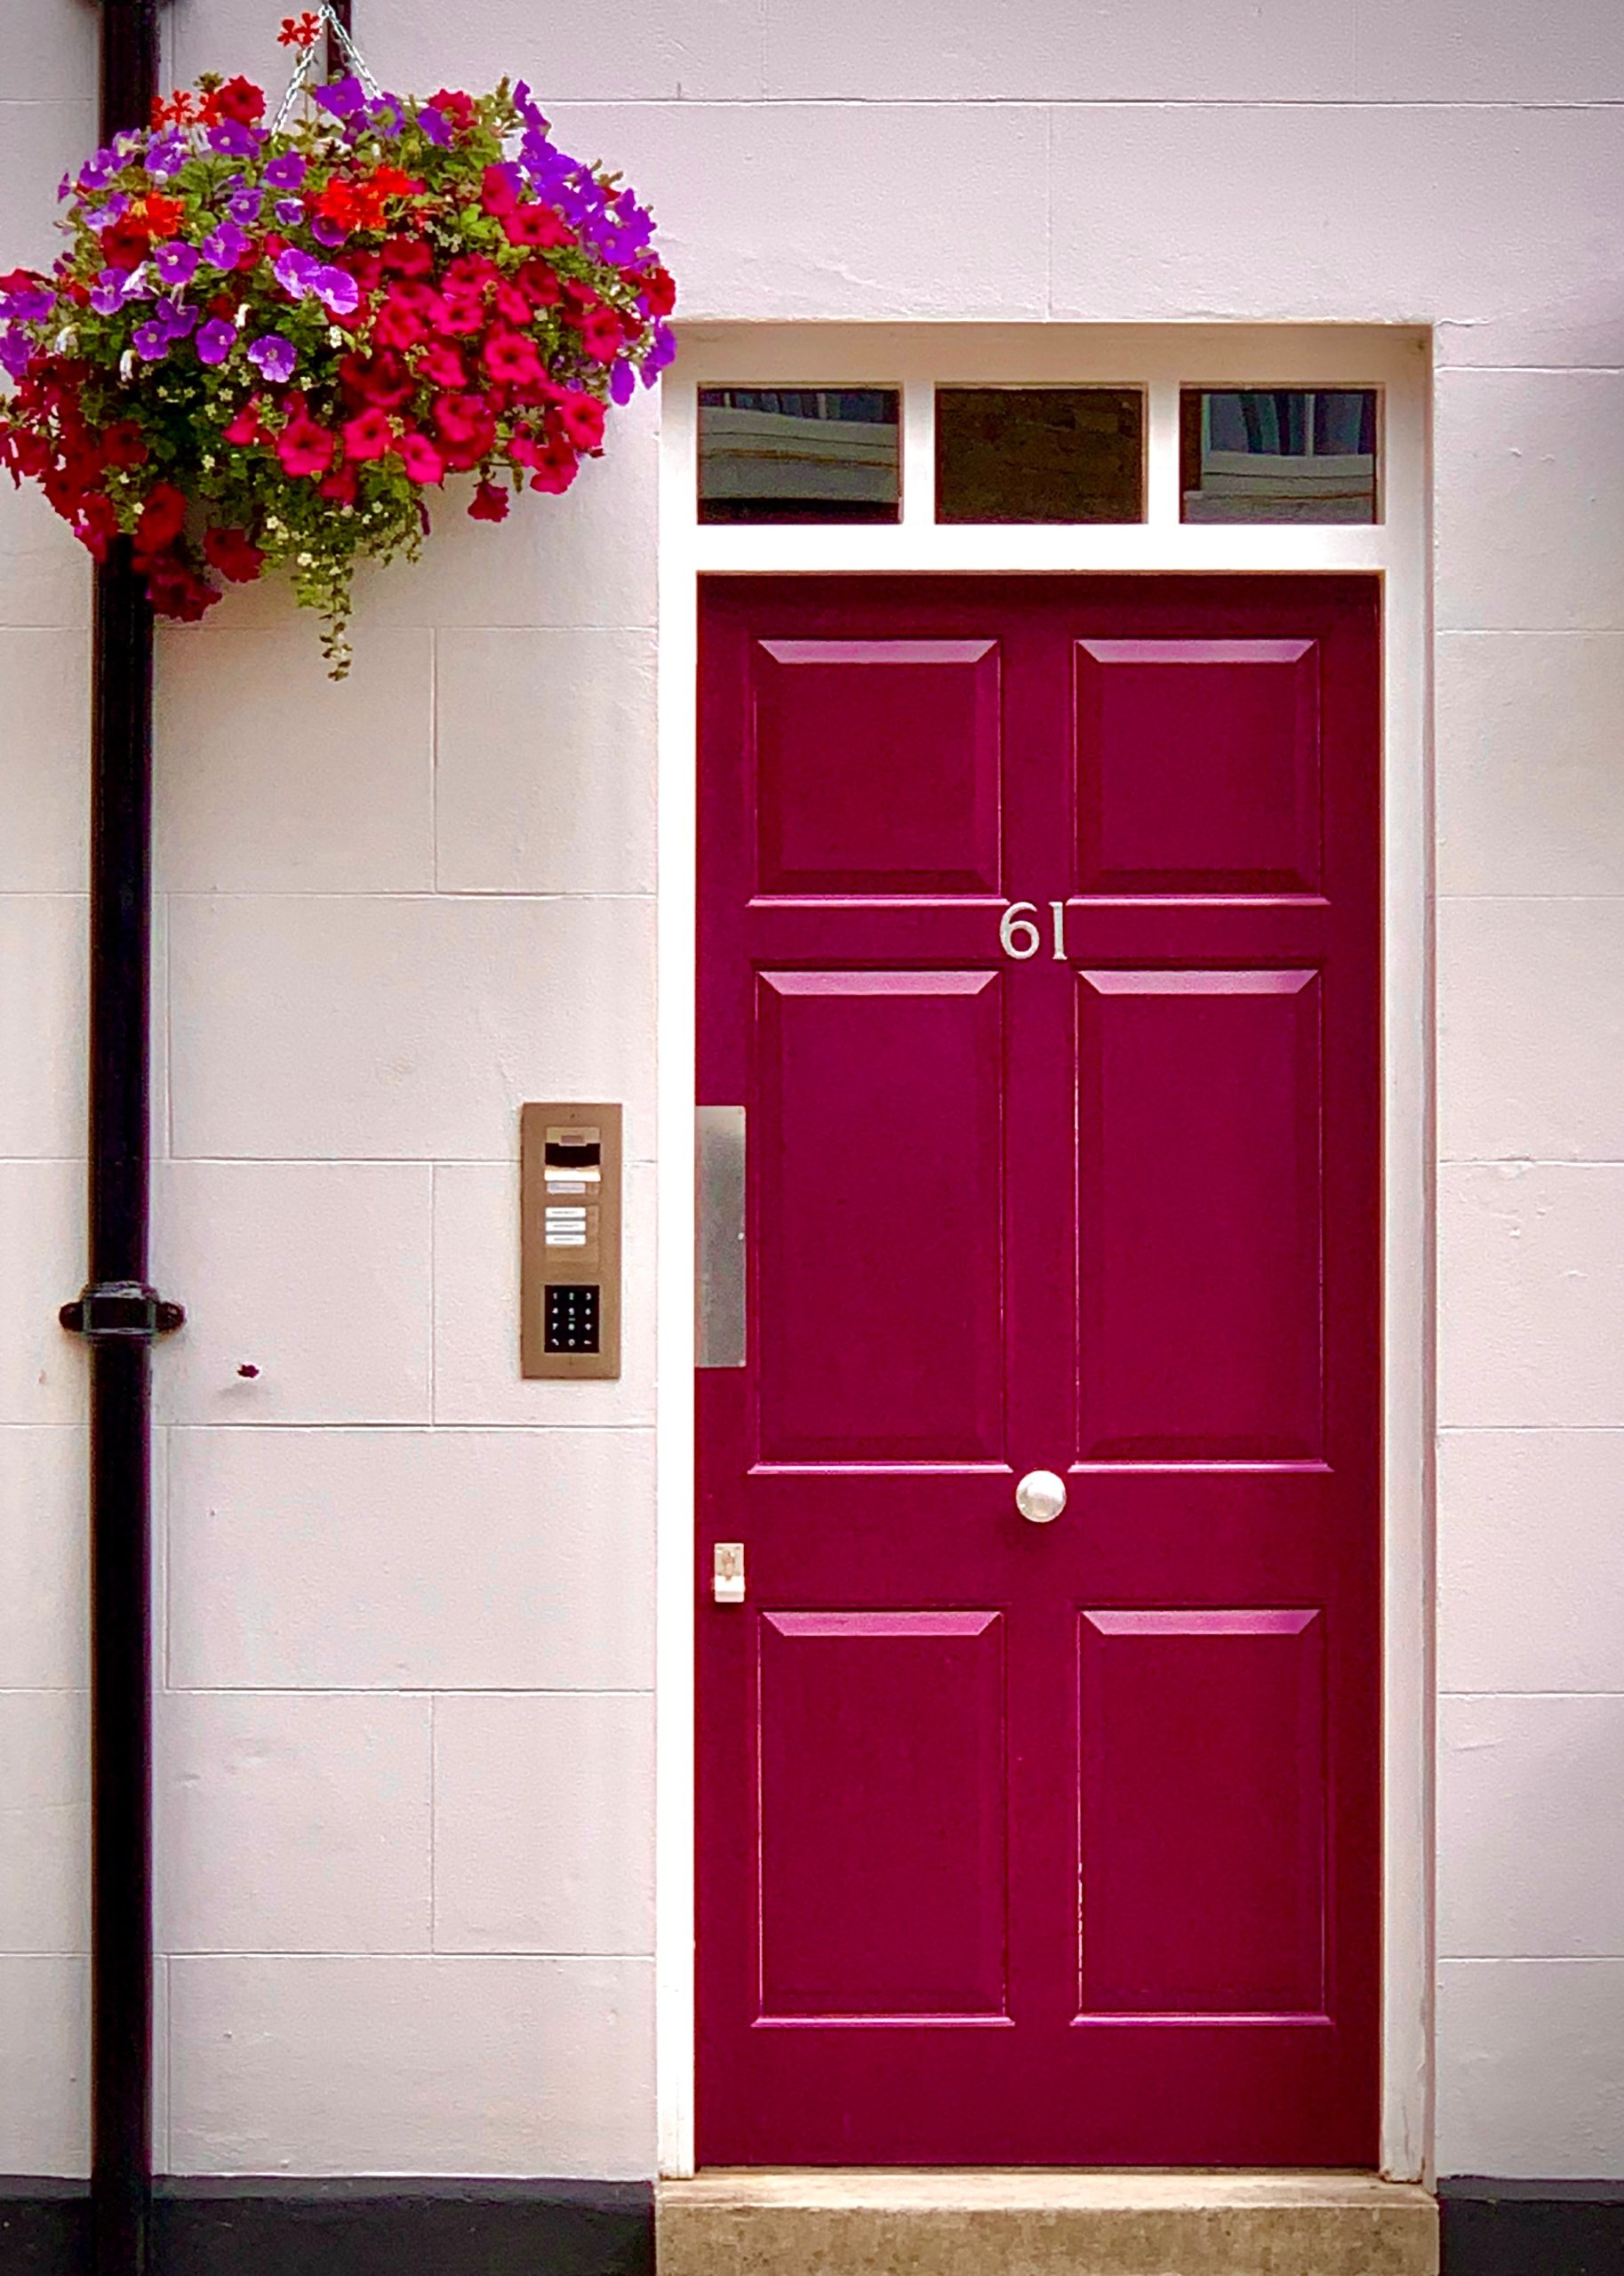 Violet and red flower beside red-violet door